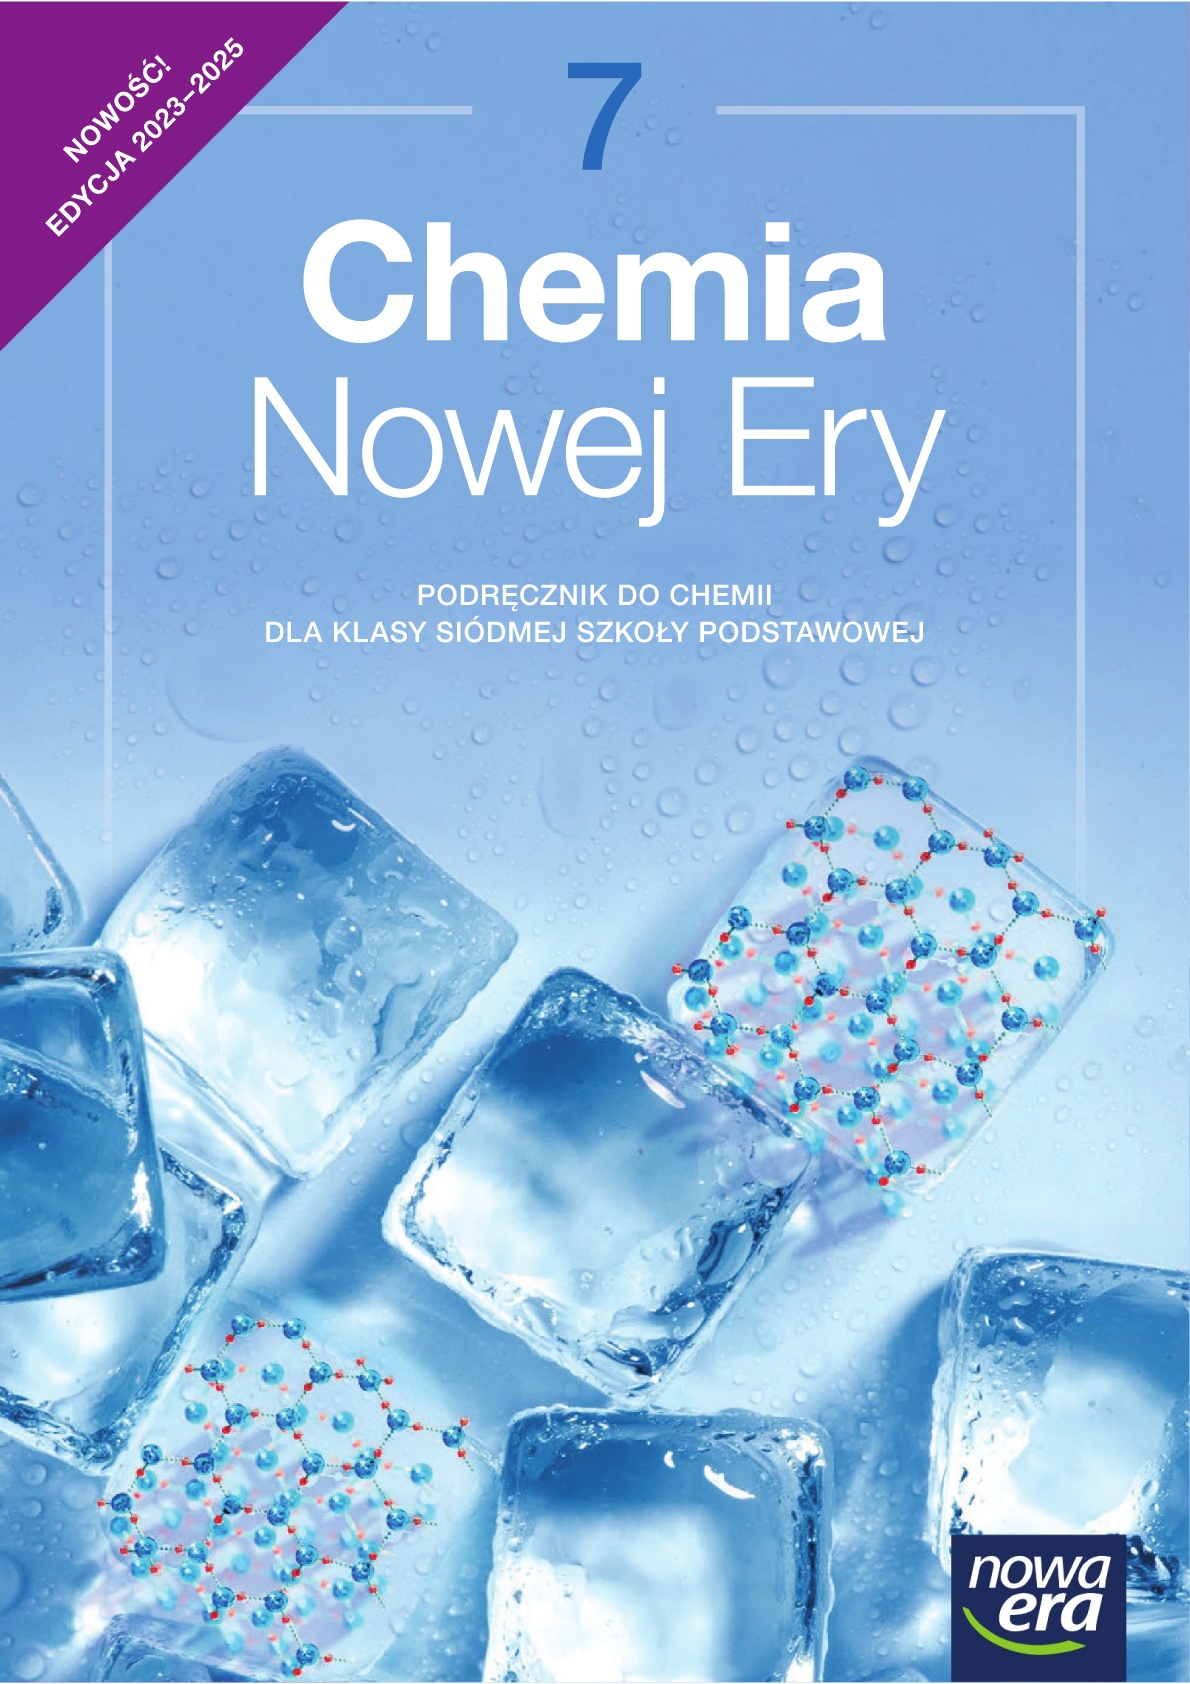 Test Z Chemii Klasa 7 Dział 4 Chemia Nowej Ery – Podręcznik do chemii dla klasy 7 szkoły podstawowej